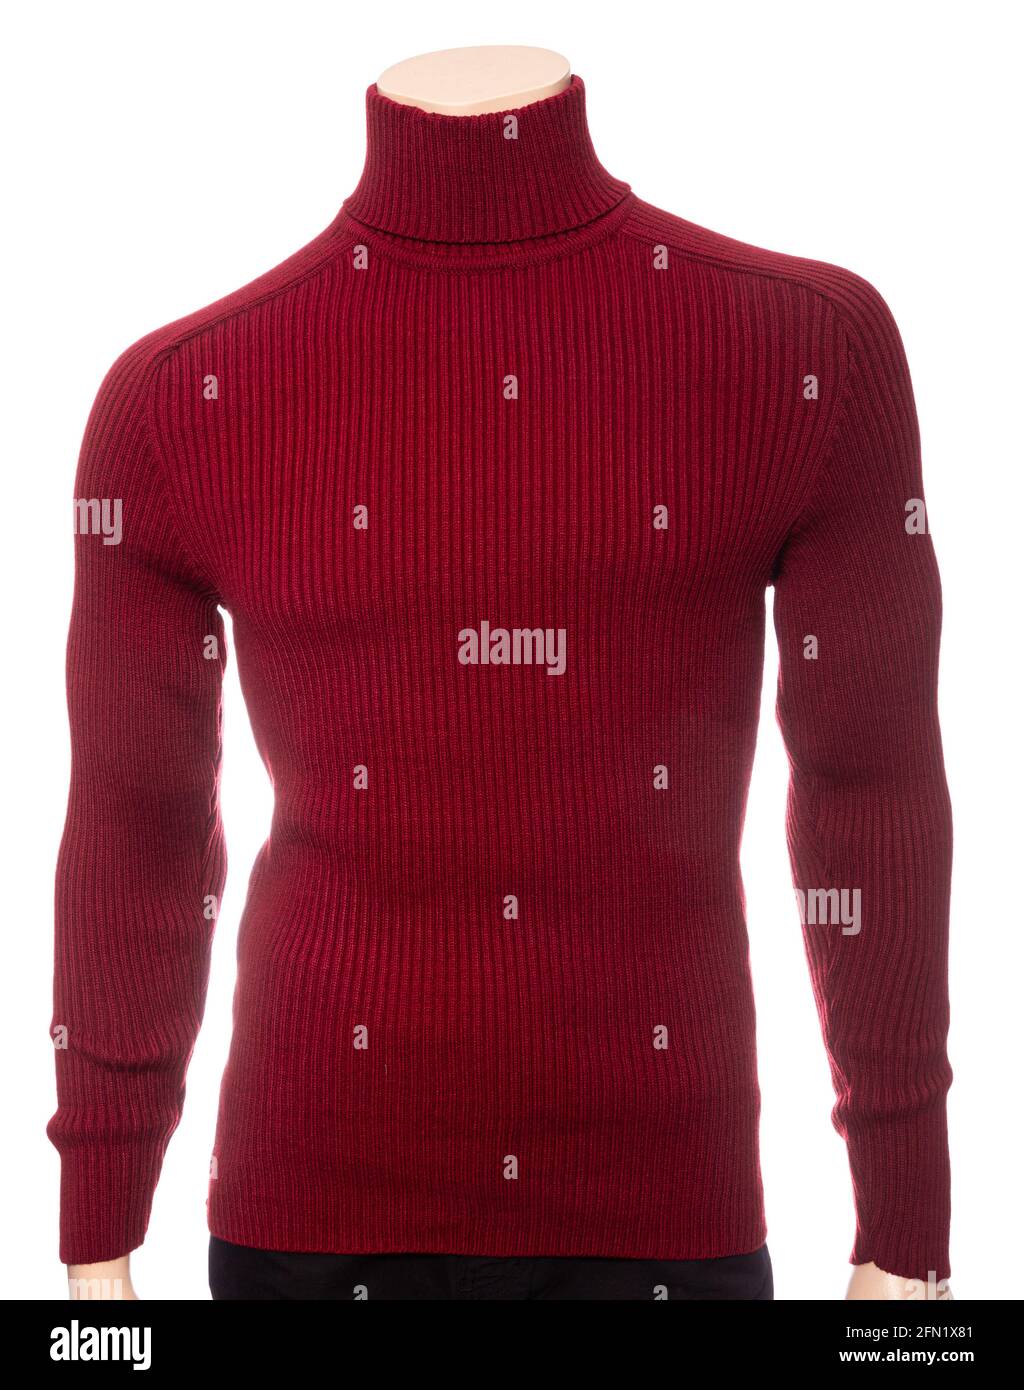 Burgundy maglia a maniche lunghe colletto jumper su manichino isolato sopra uno sfondo bianco Foto Stock